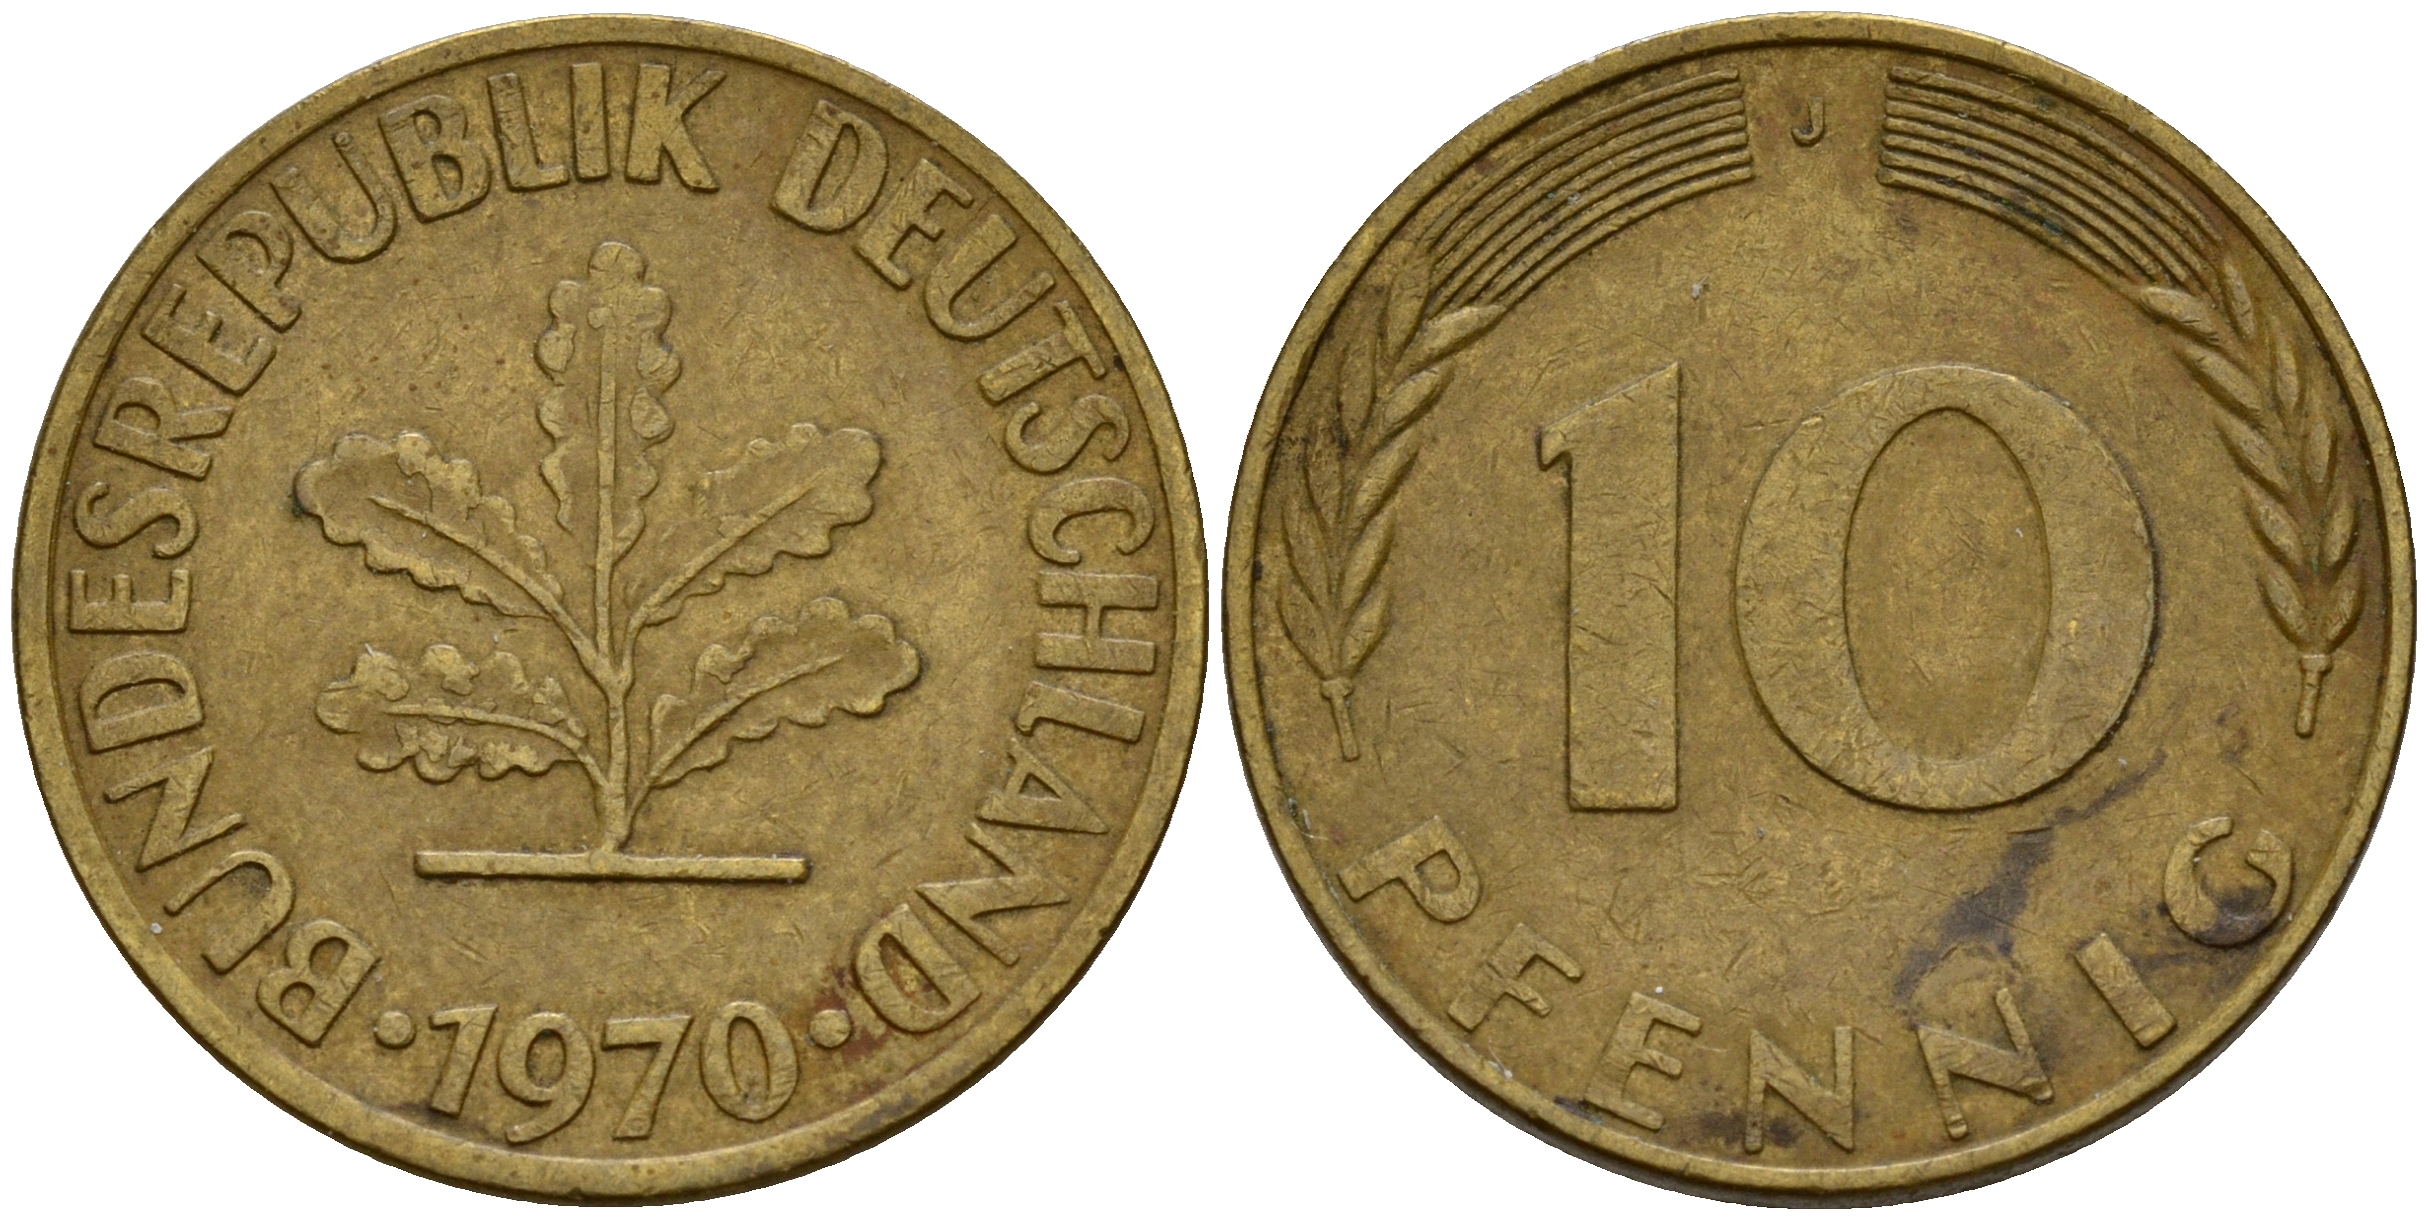 3 к 1940 года. 2 Рейхспфеннига 1939. Монета немецкая 1 рейхспфенниг 1936. Германия 1 пфенниг 1945. 2 Бата монета.